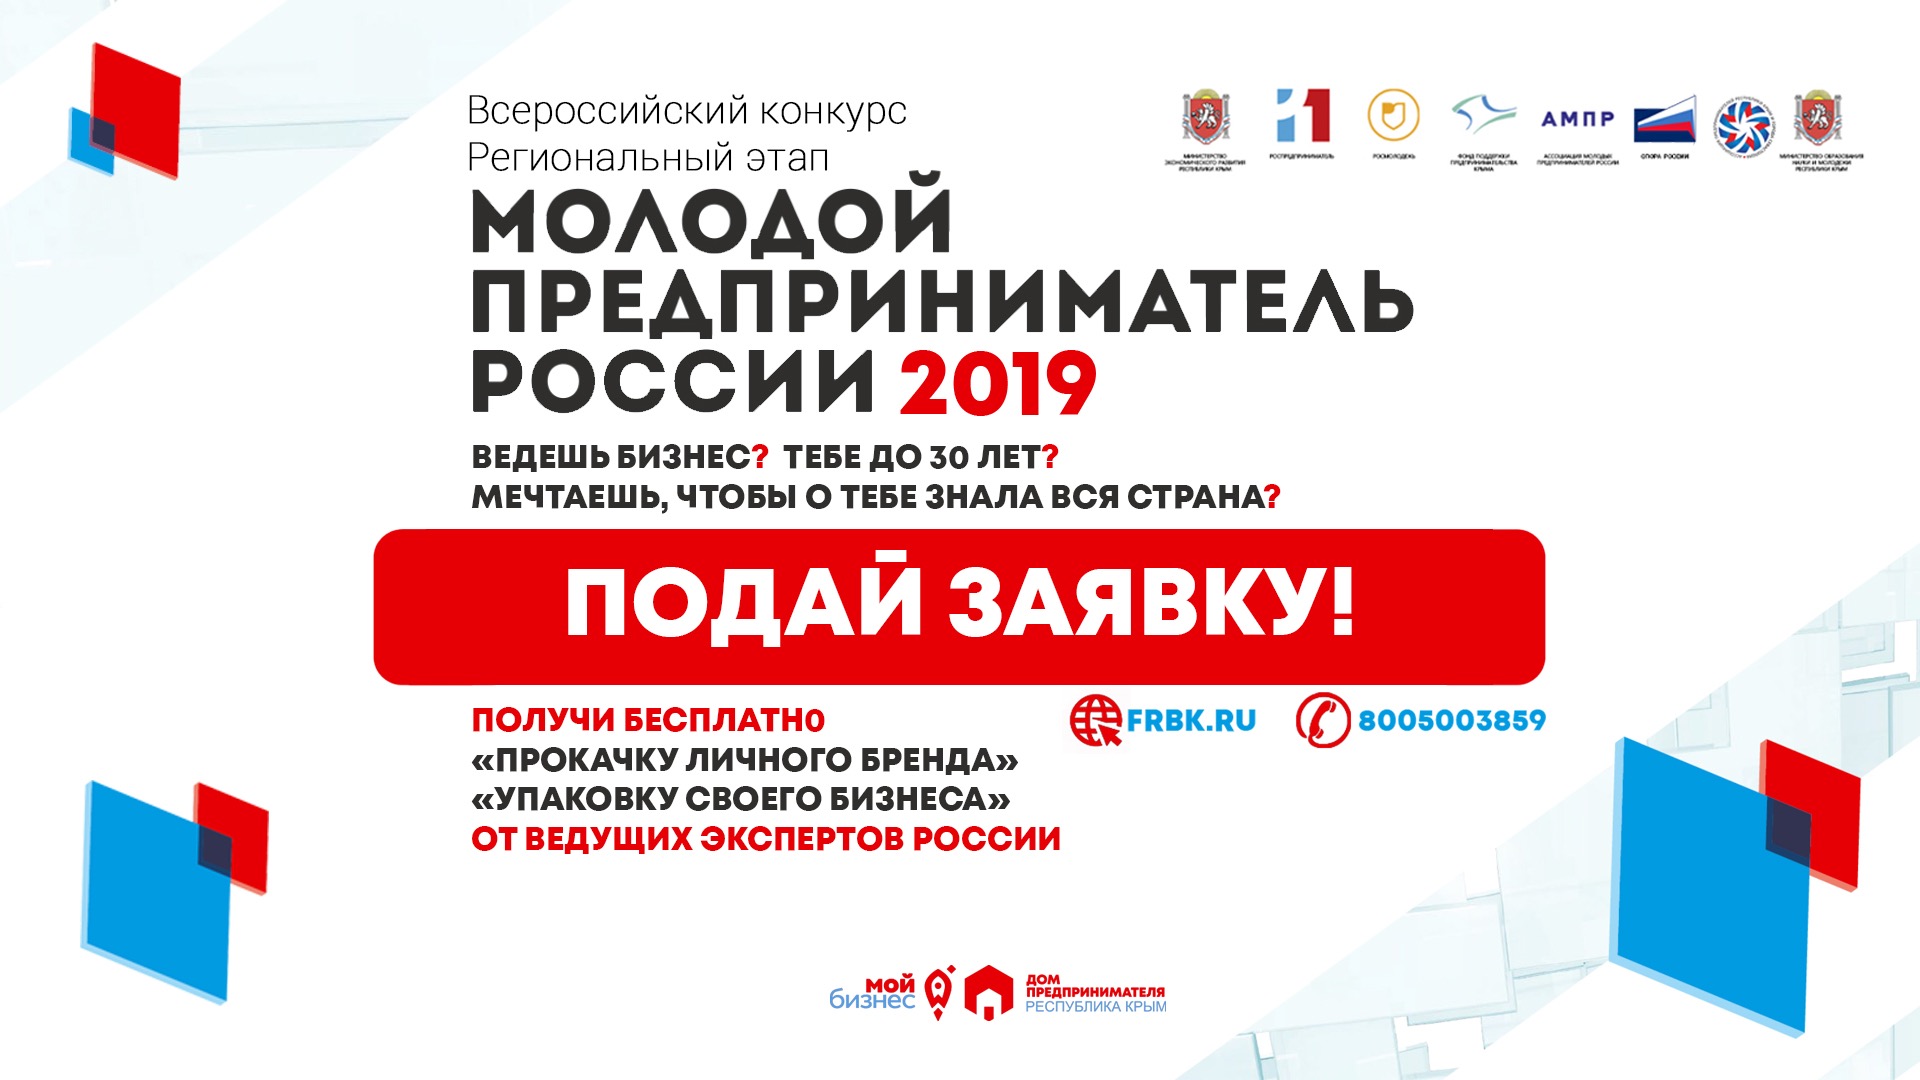 Примите участие в конкурсе «Молодой предприниматель России 2019»!